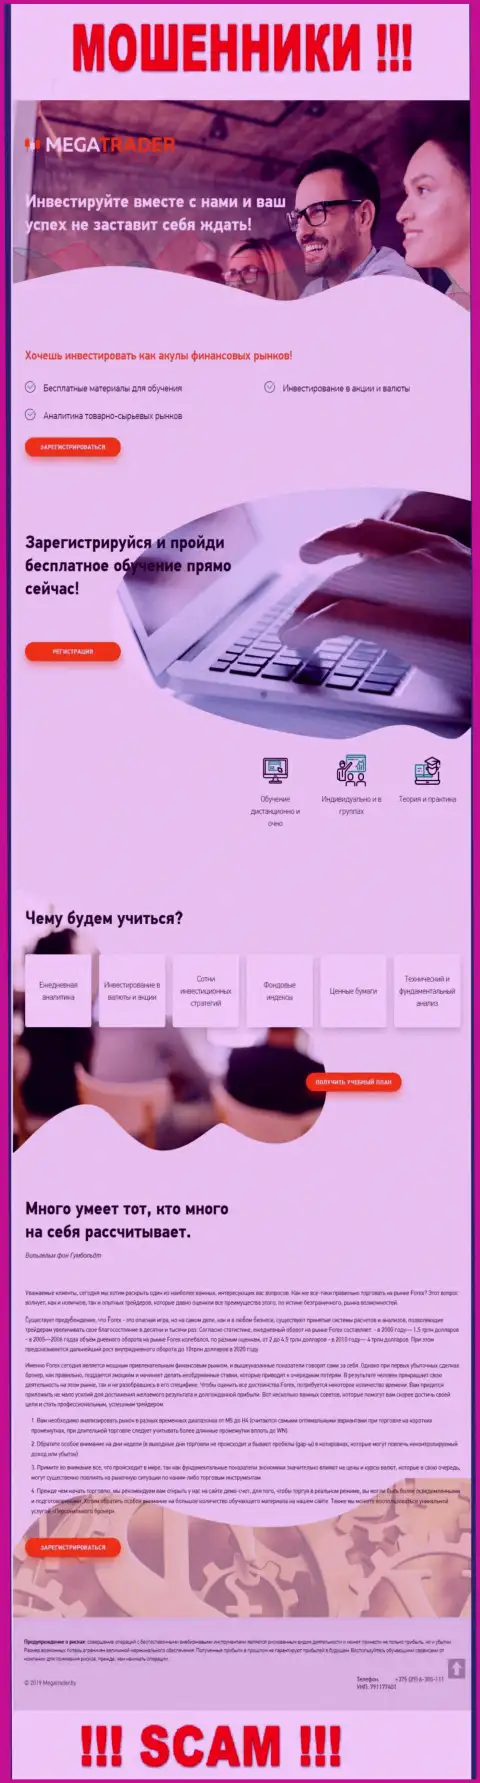 Вид веб-сервиса мошеннической конторы MegaTrader By